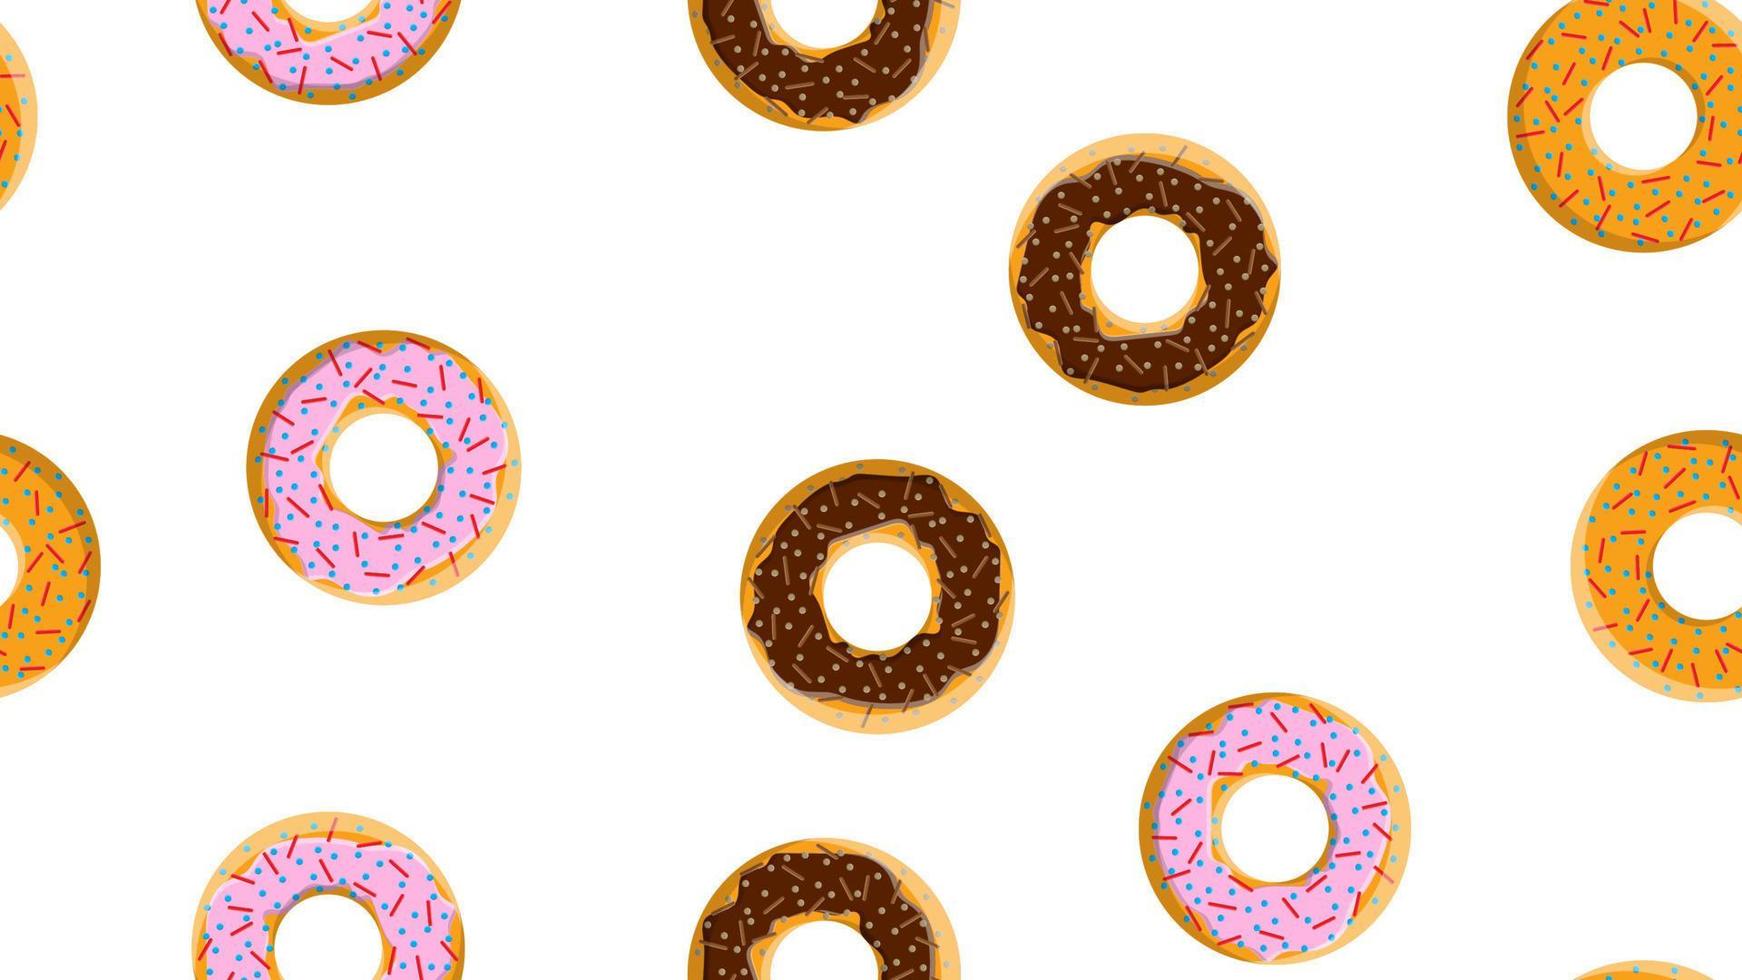 naadloos patroon, structuur van verschillend ronde zoet meel smakelijk vers heet donuts, gebakjes, met suikerlaag koekjes in chocola snoep karamel snoep Aan een wit achtergrond. vector illustratie